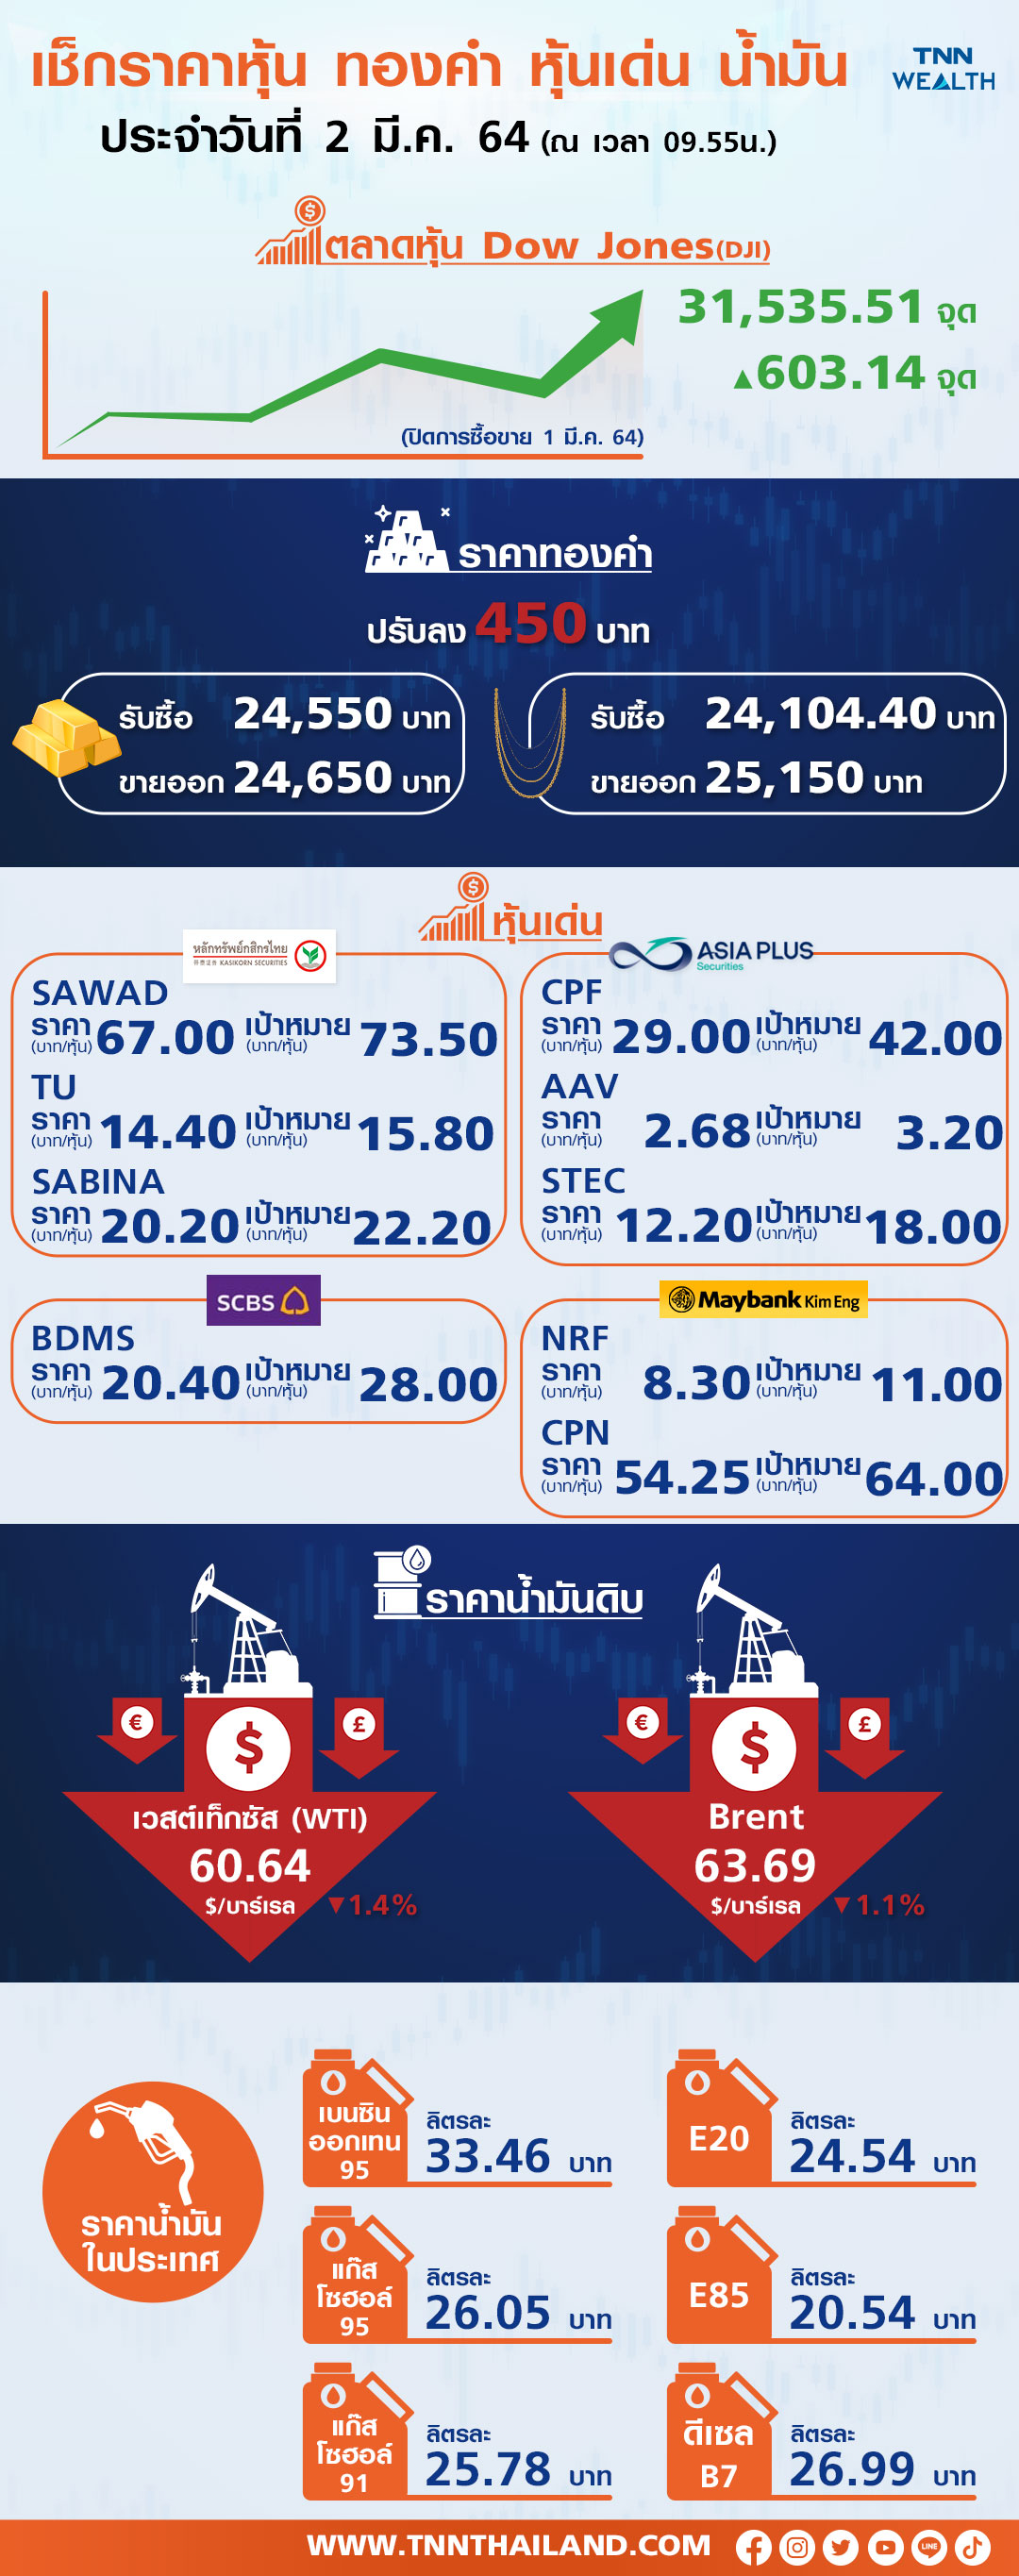 หุ้นไทยเด้งสอดรับตลาดหุ้นเอเชีย หลังดาวโจนส์ปิดพุ่งรับข่าวตัวเลขเศรษฐกิจฟื้น